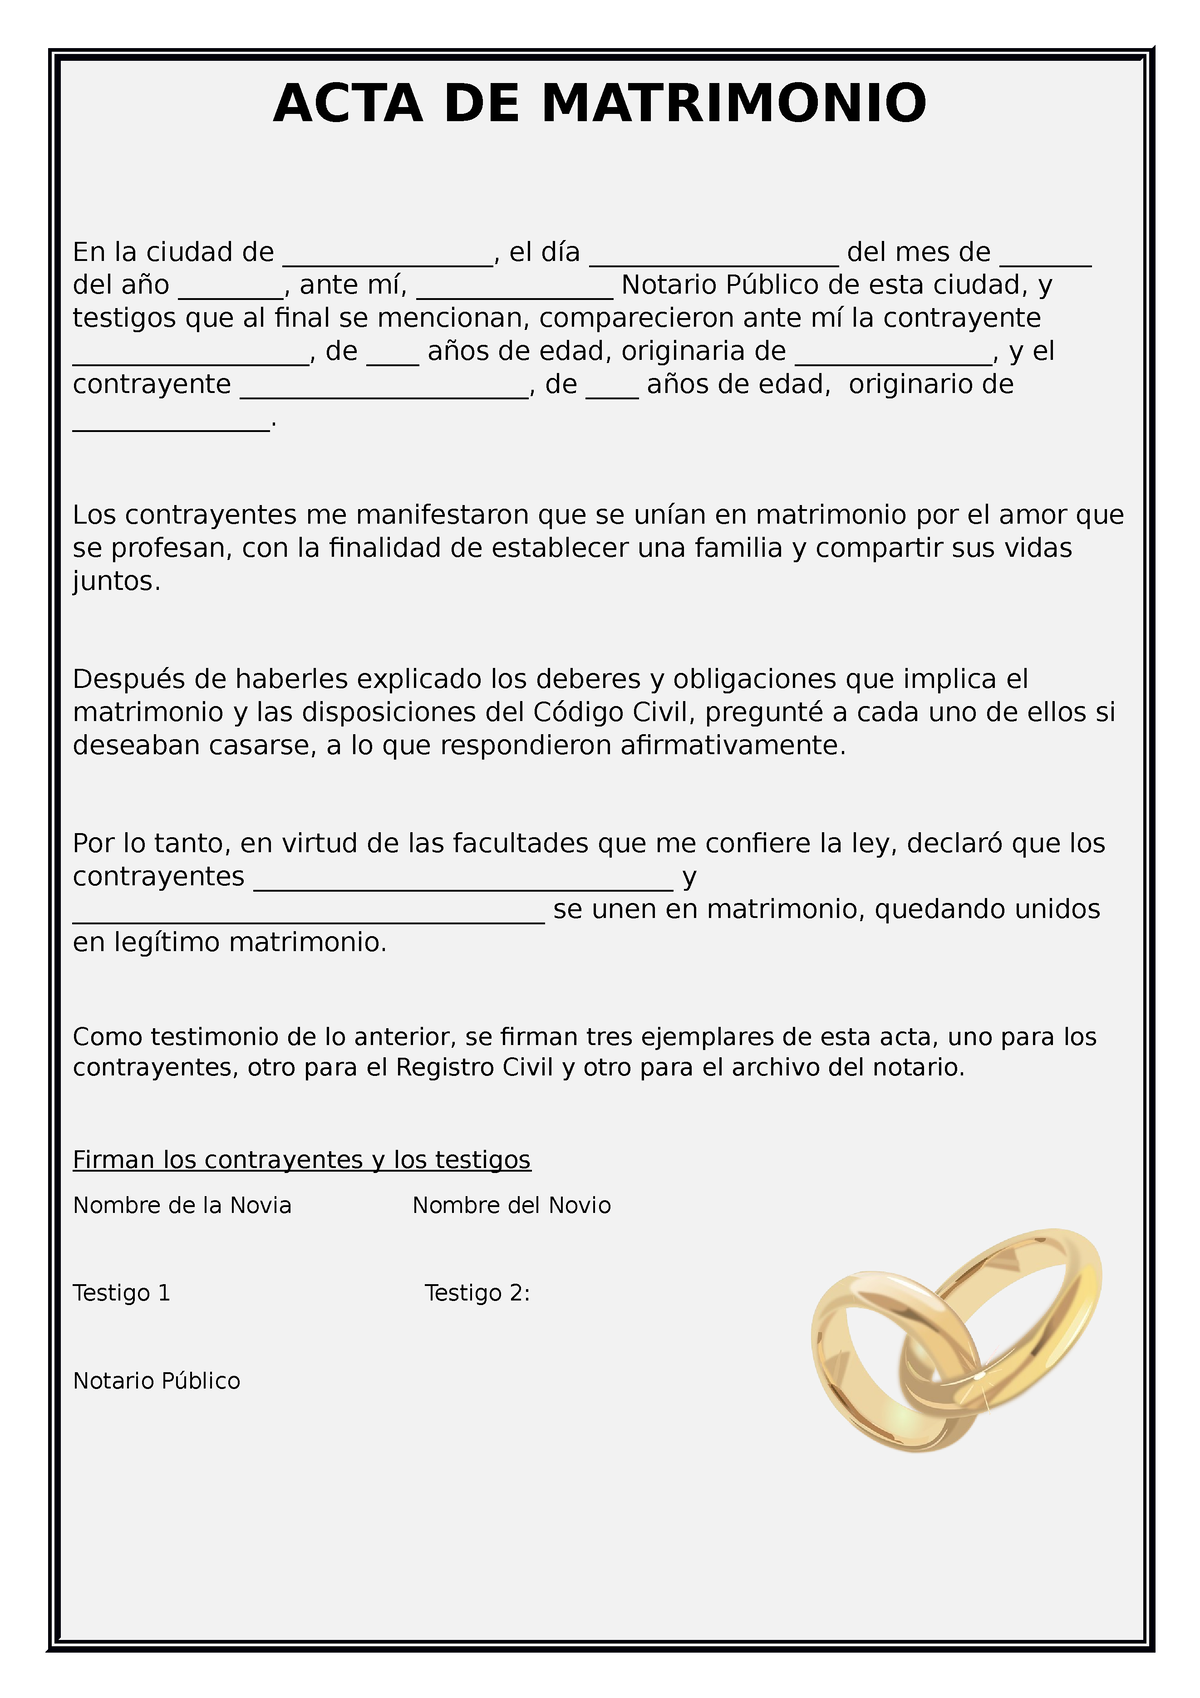 Acta De Matrimonio Falsa Online Acta De Matrimonio En La Ciudad De El Día 0332